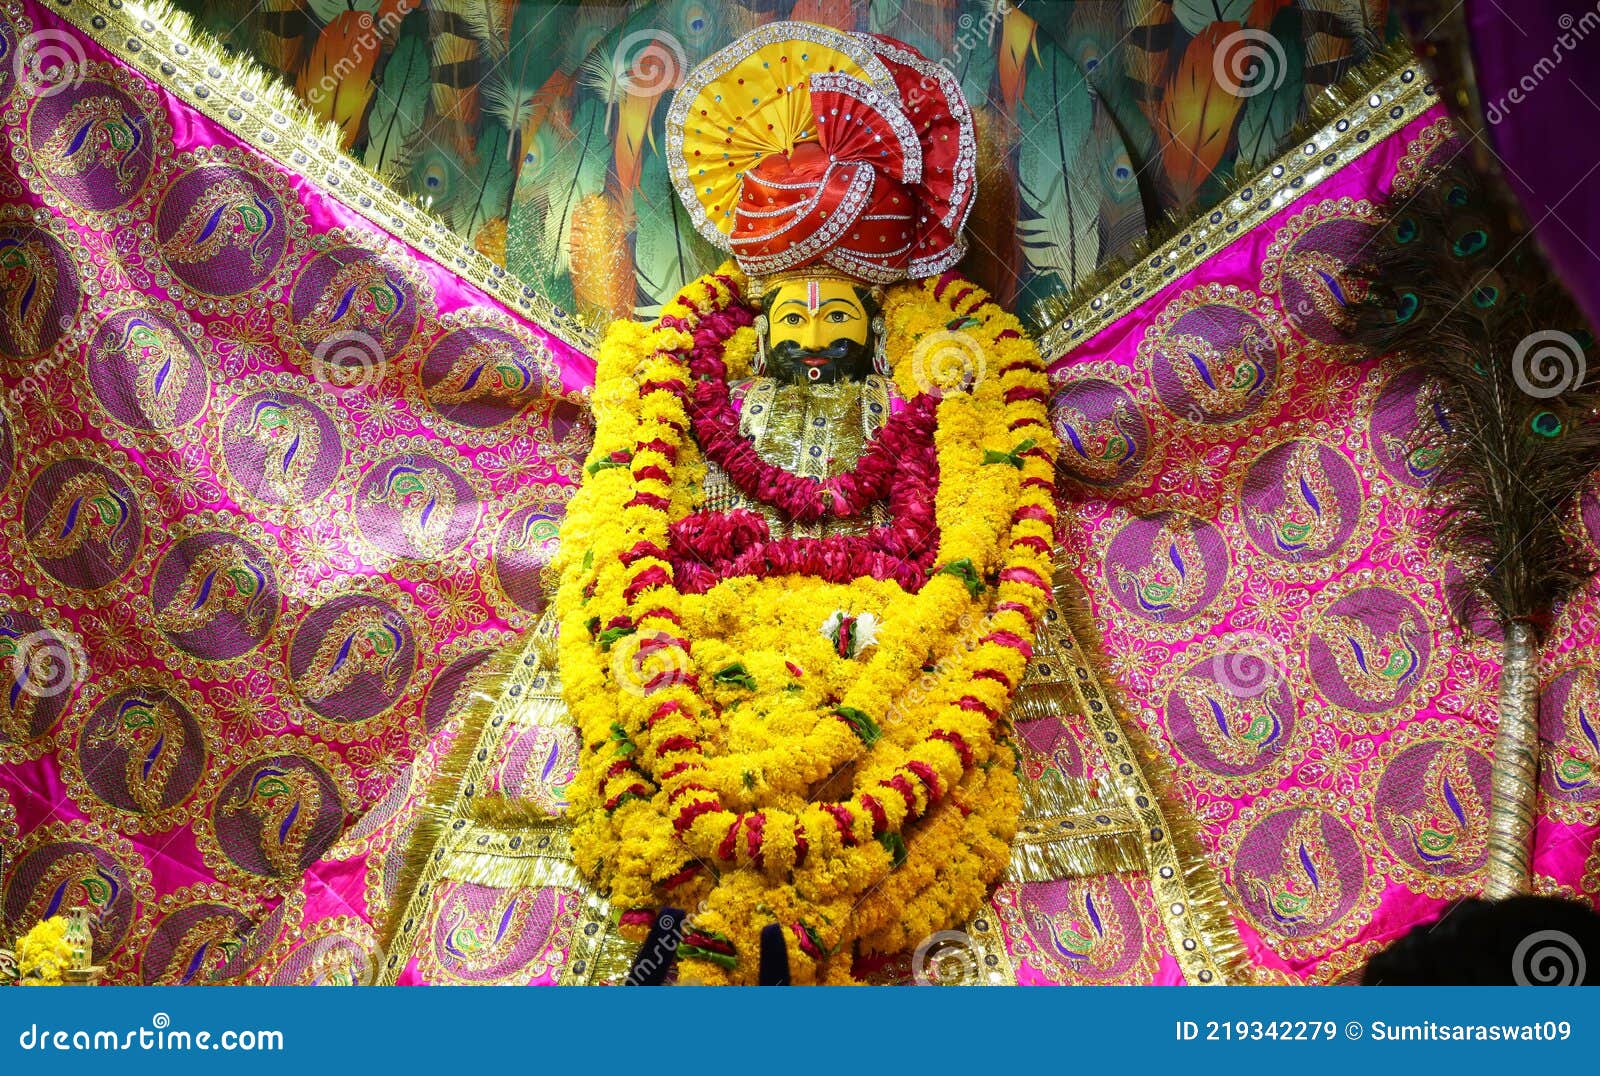 Hindu God Khatu Shyam Baba in Rajasthan, India Stock Image - Image ...